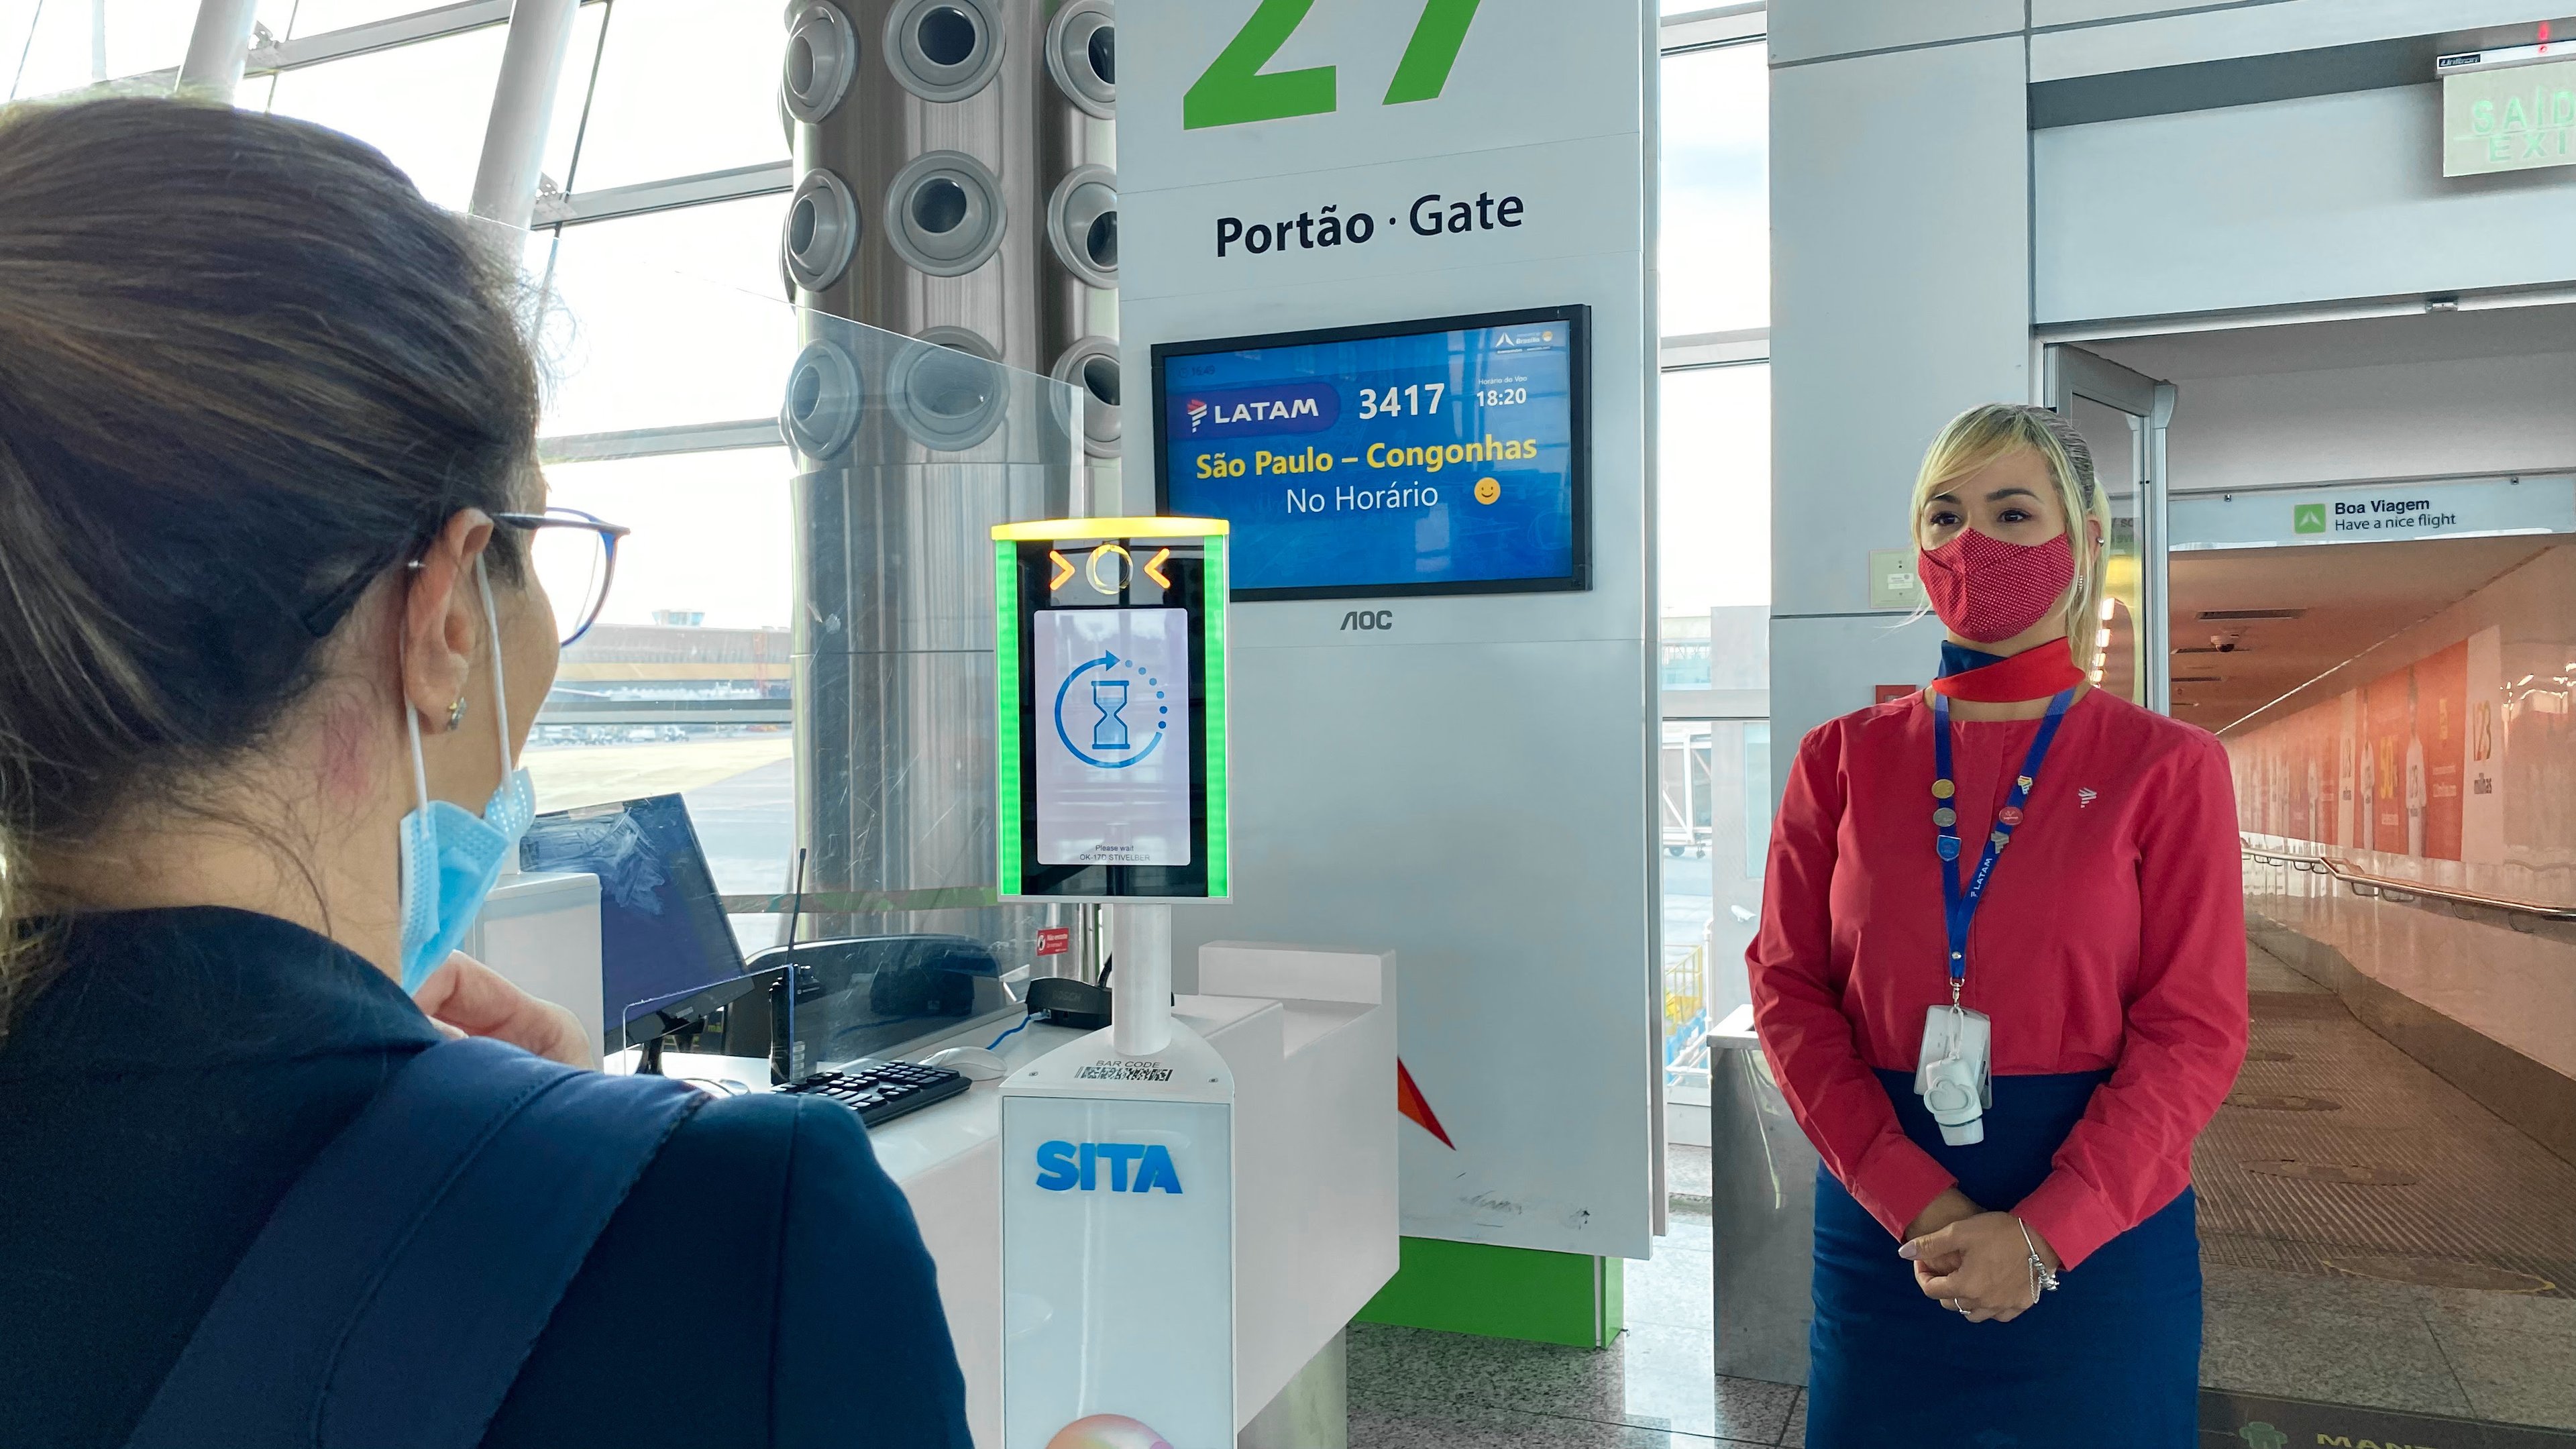 Embarque facial biométrico dispensa a apresentação de documentos e bilhete aéreo. (Fonte: LATAM/Divulgação)